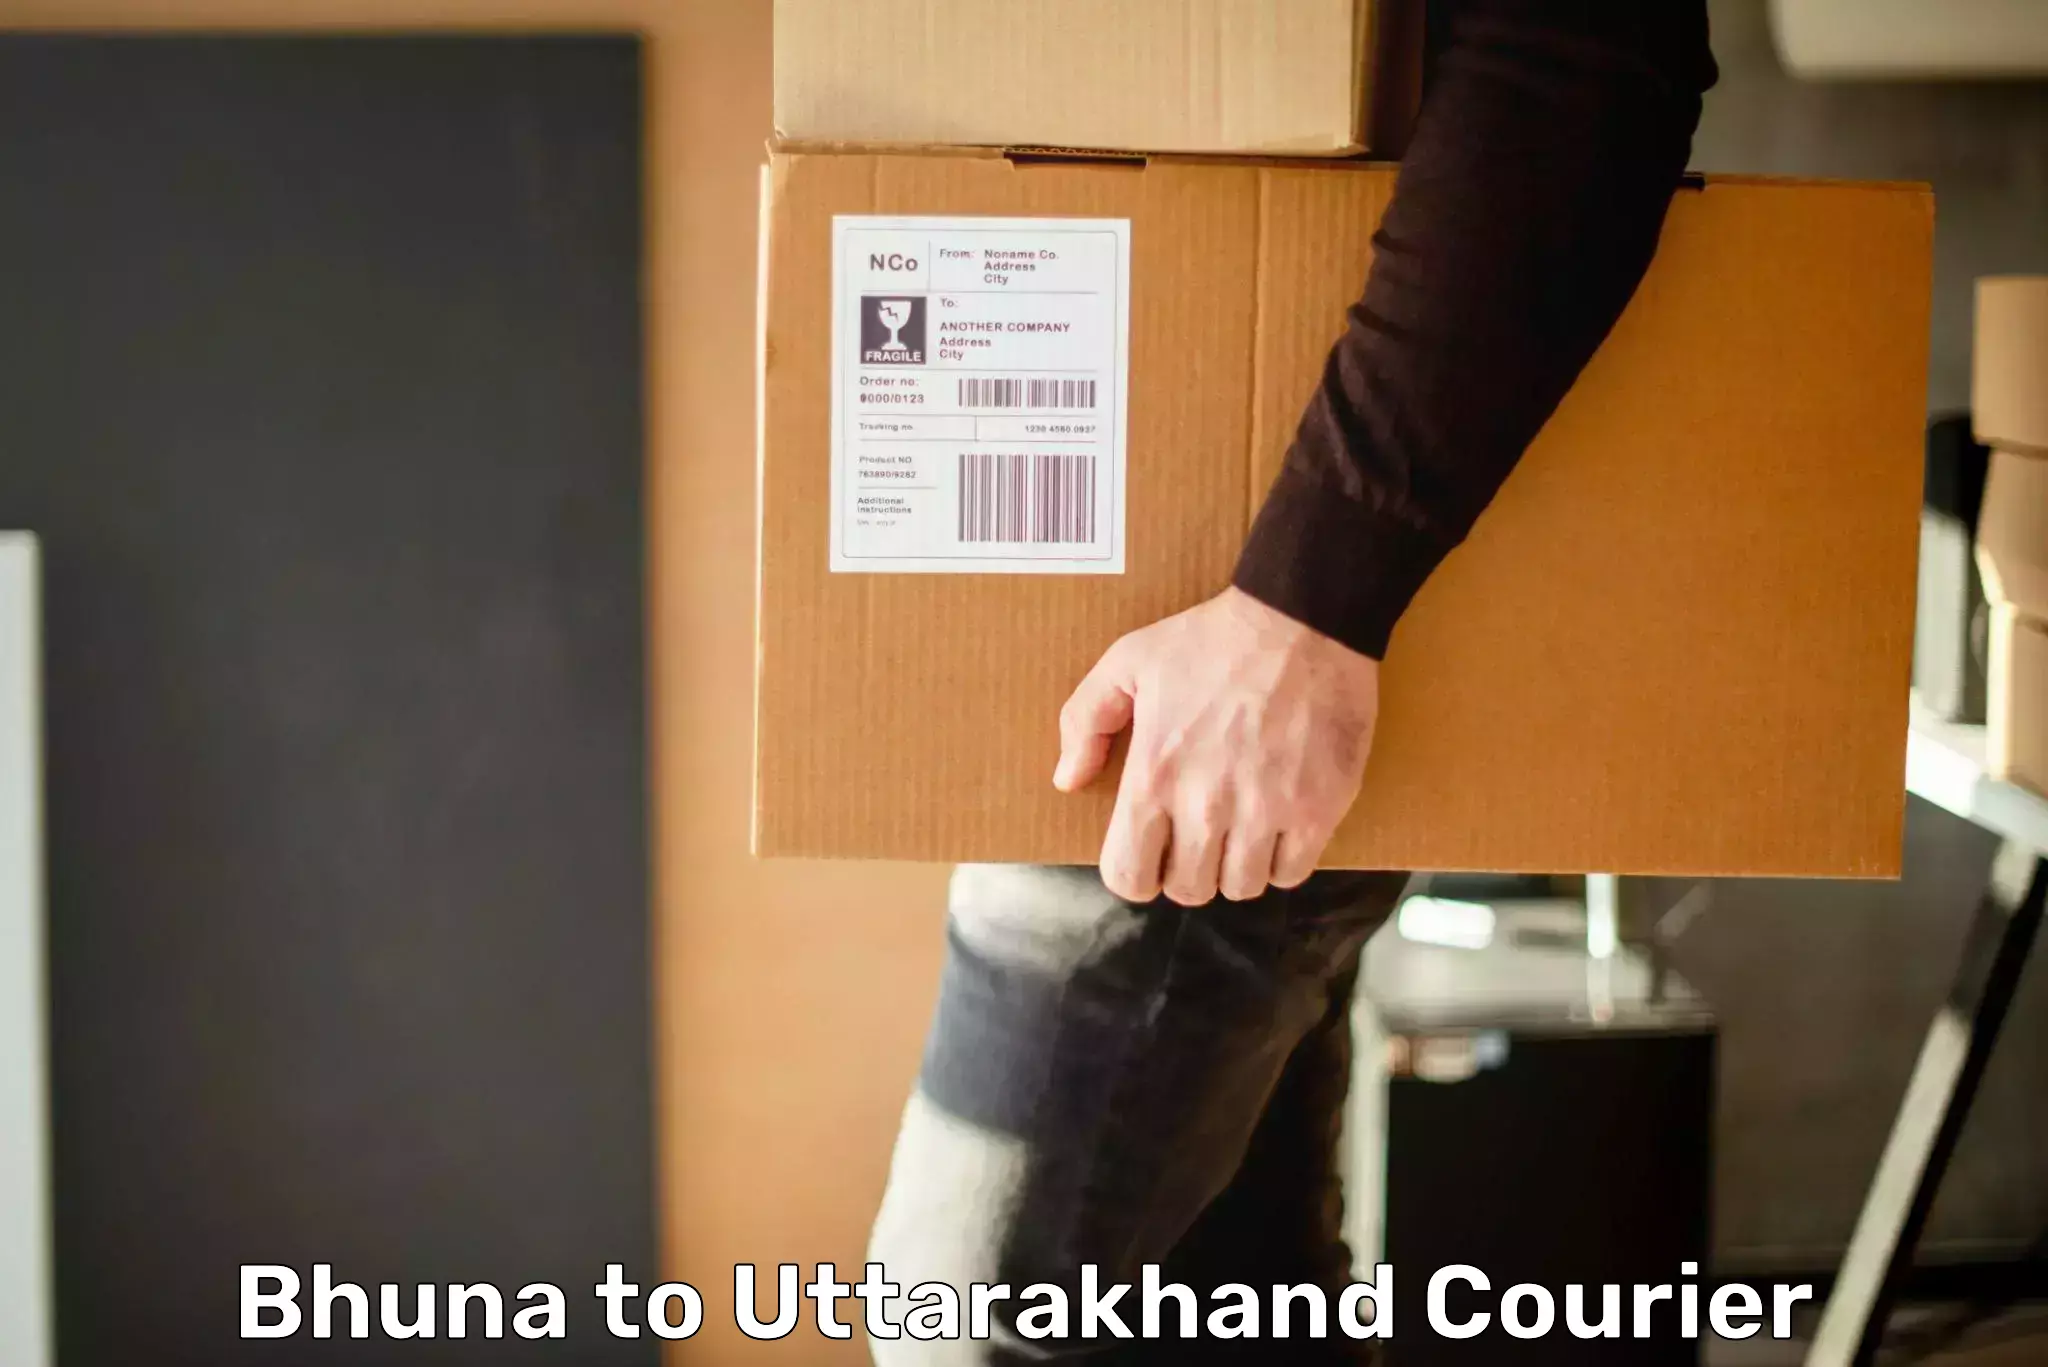 User-friendly courier app Bhuna to Uttarakhand